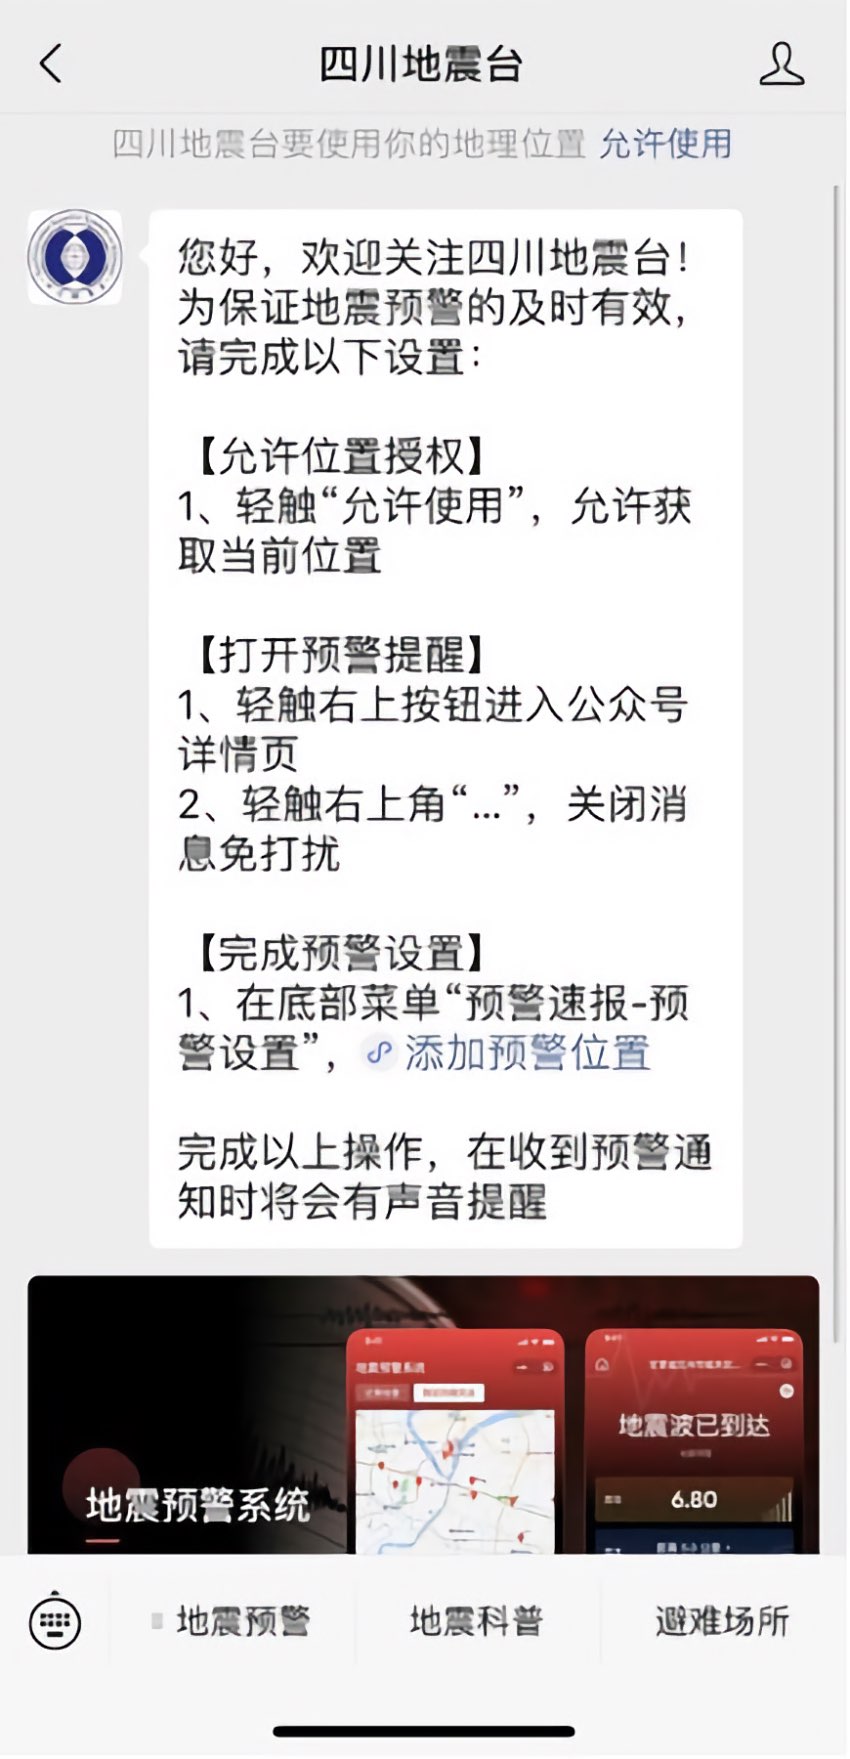 搜索小程序“四川地震台”，即可完成預警信息訂閱。四川省地震局供圖